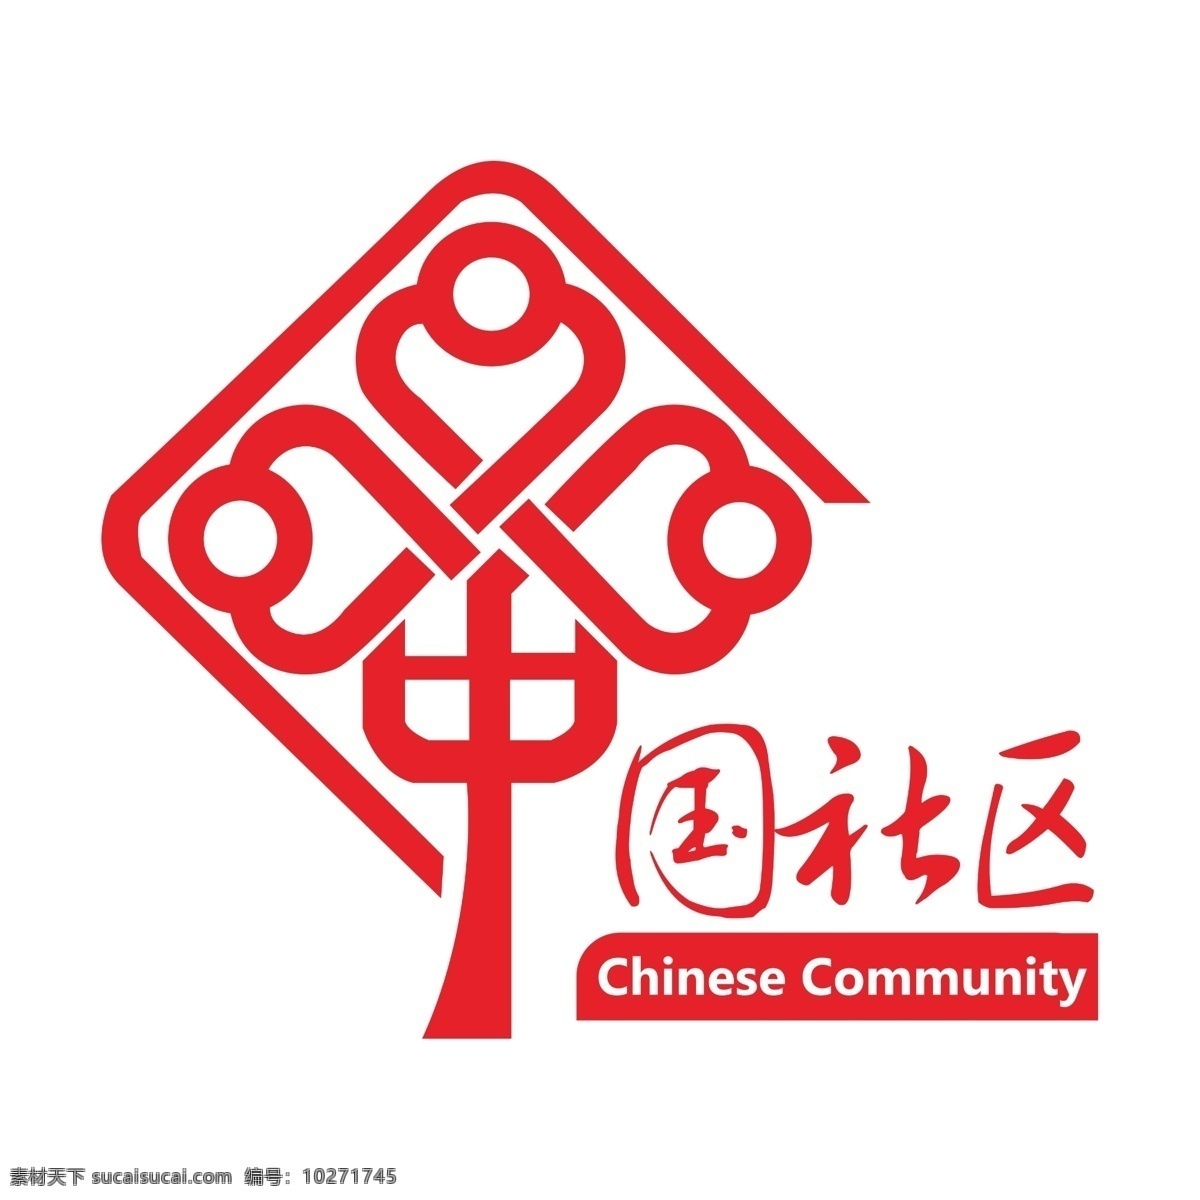 中国 社区 logo 中国社区标志 中国社区标识 中国社区图标 中国红 中国结 物业标识 物业素材 矢量素材 中国社区矢量 社区中国 社区标志 社区标识 社区标 社区图标 中国的社区